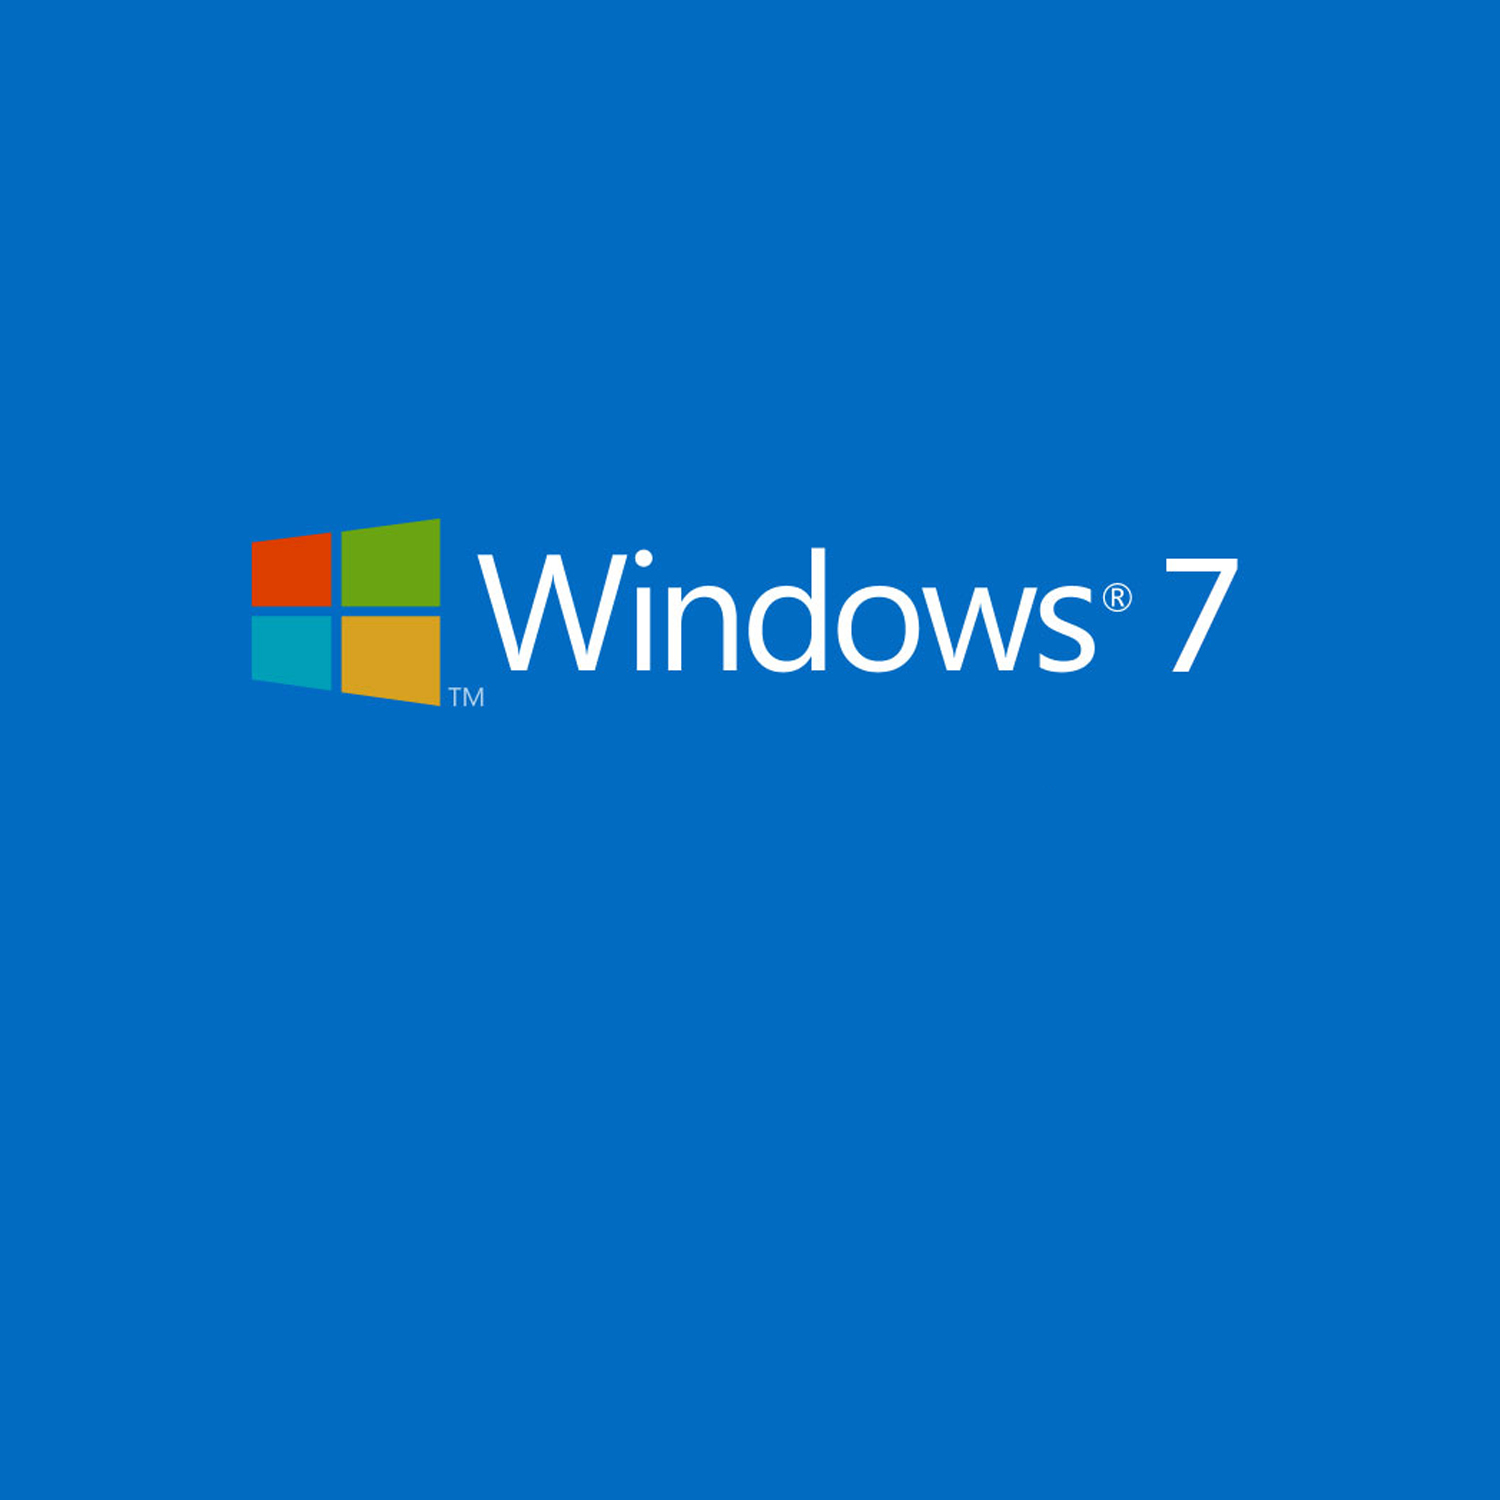 Slutt for Windows 7